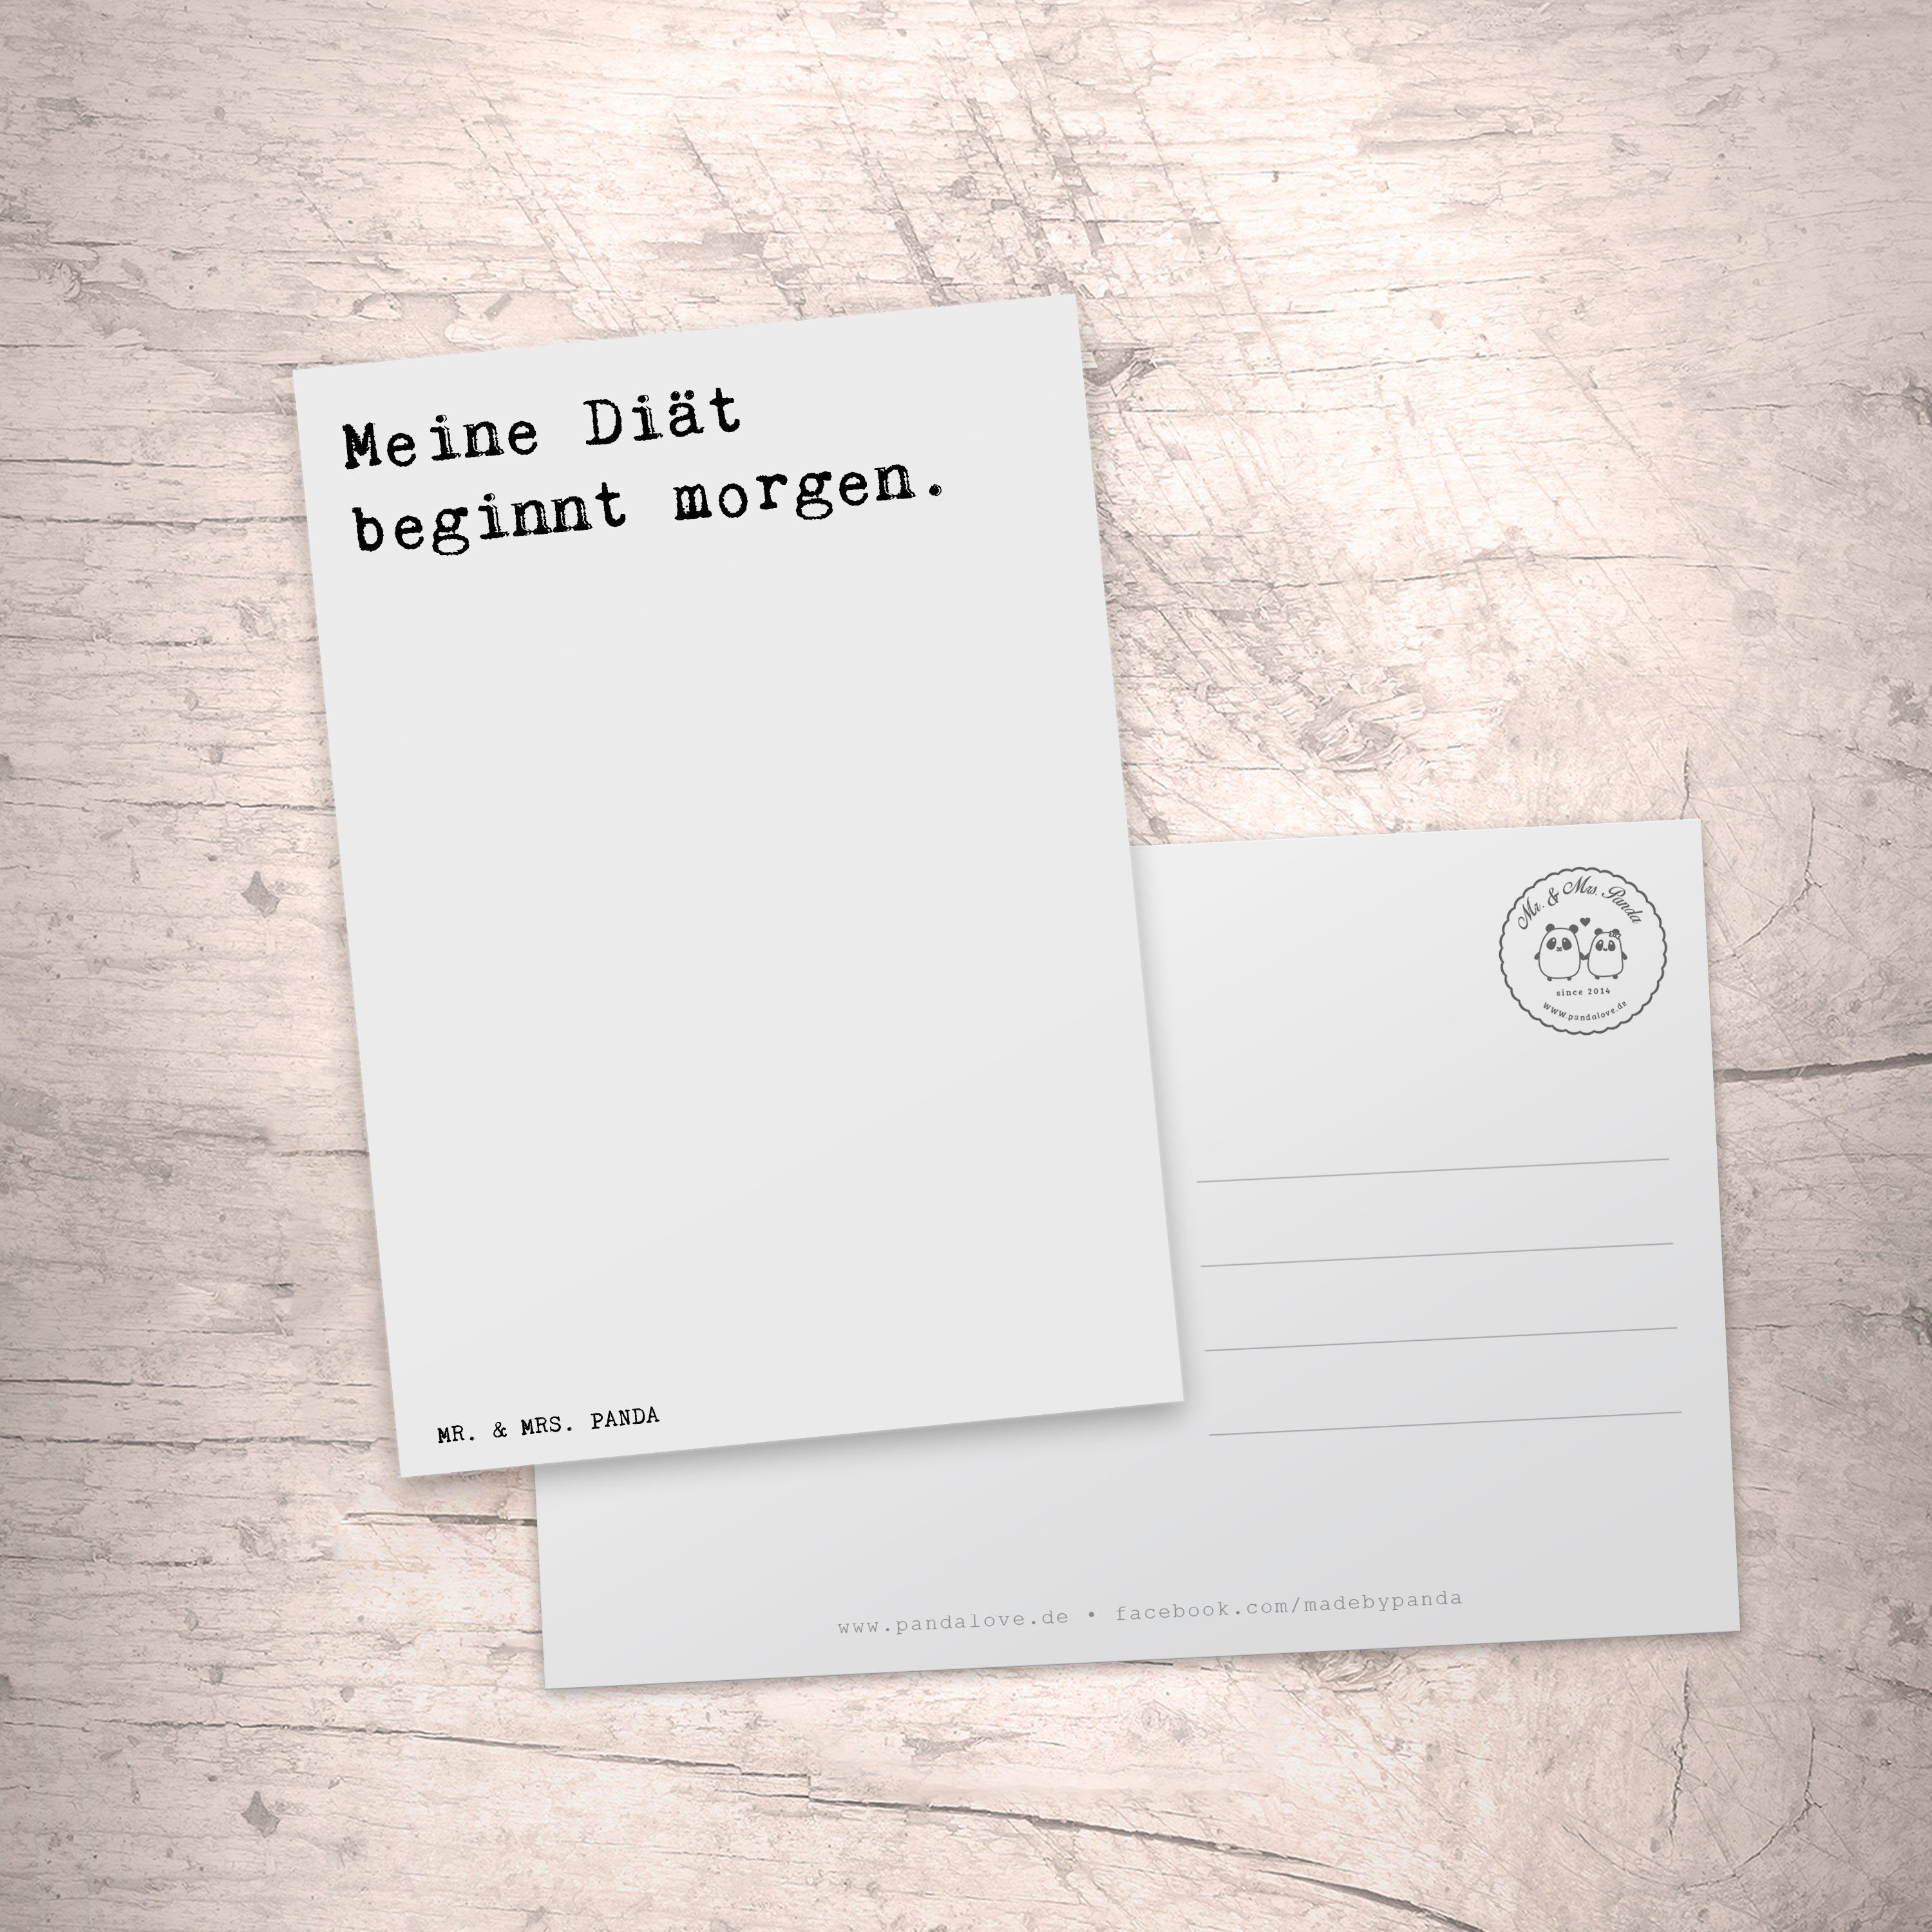 Mr. & Mrs. Panda Postkarte Meine Diät beginnt morgen. - Weiß - Geschenk, Diät Abnehmen Fasten Lu | Grußkarten